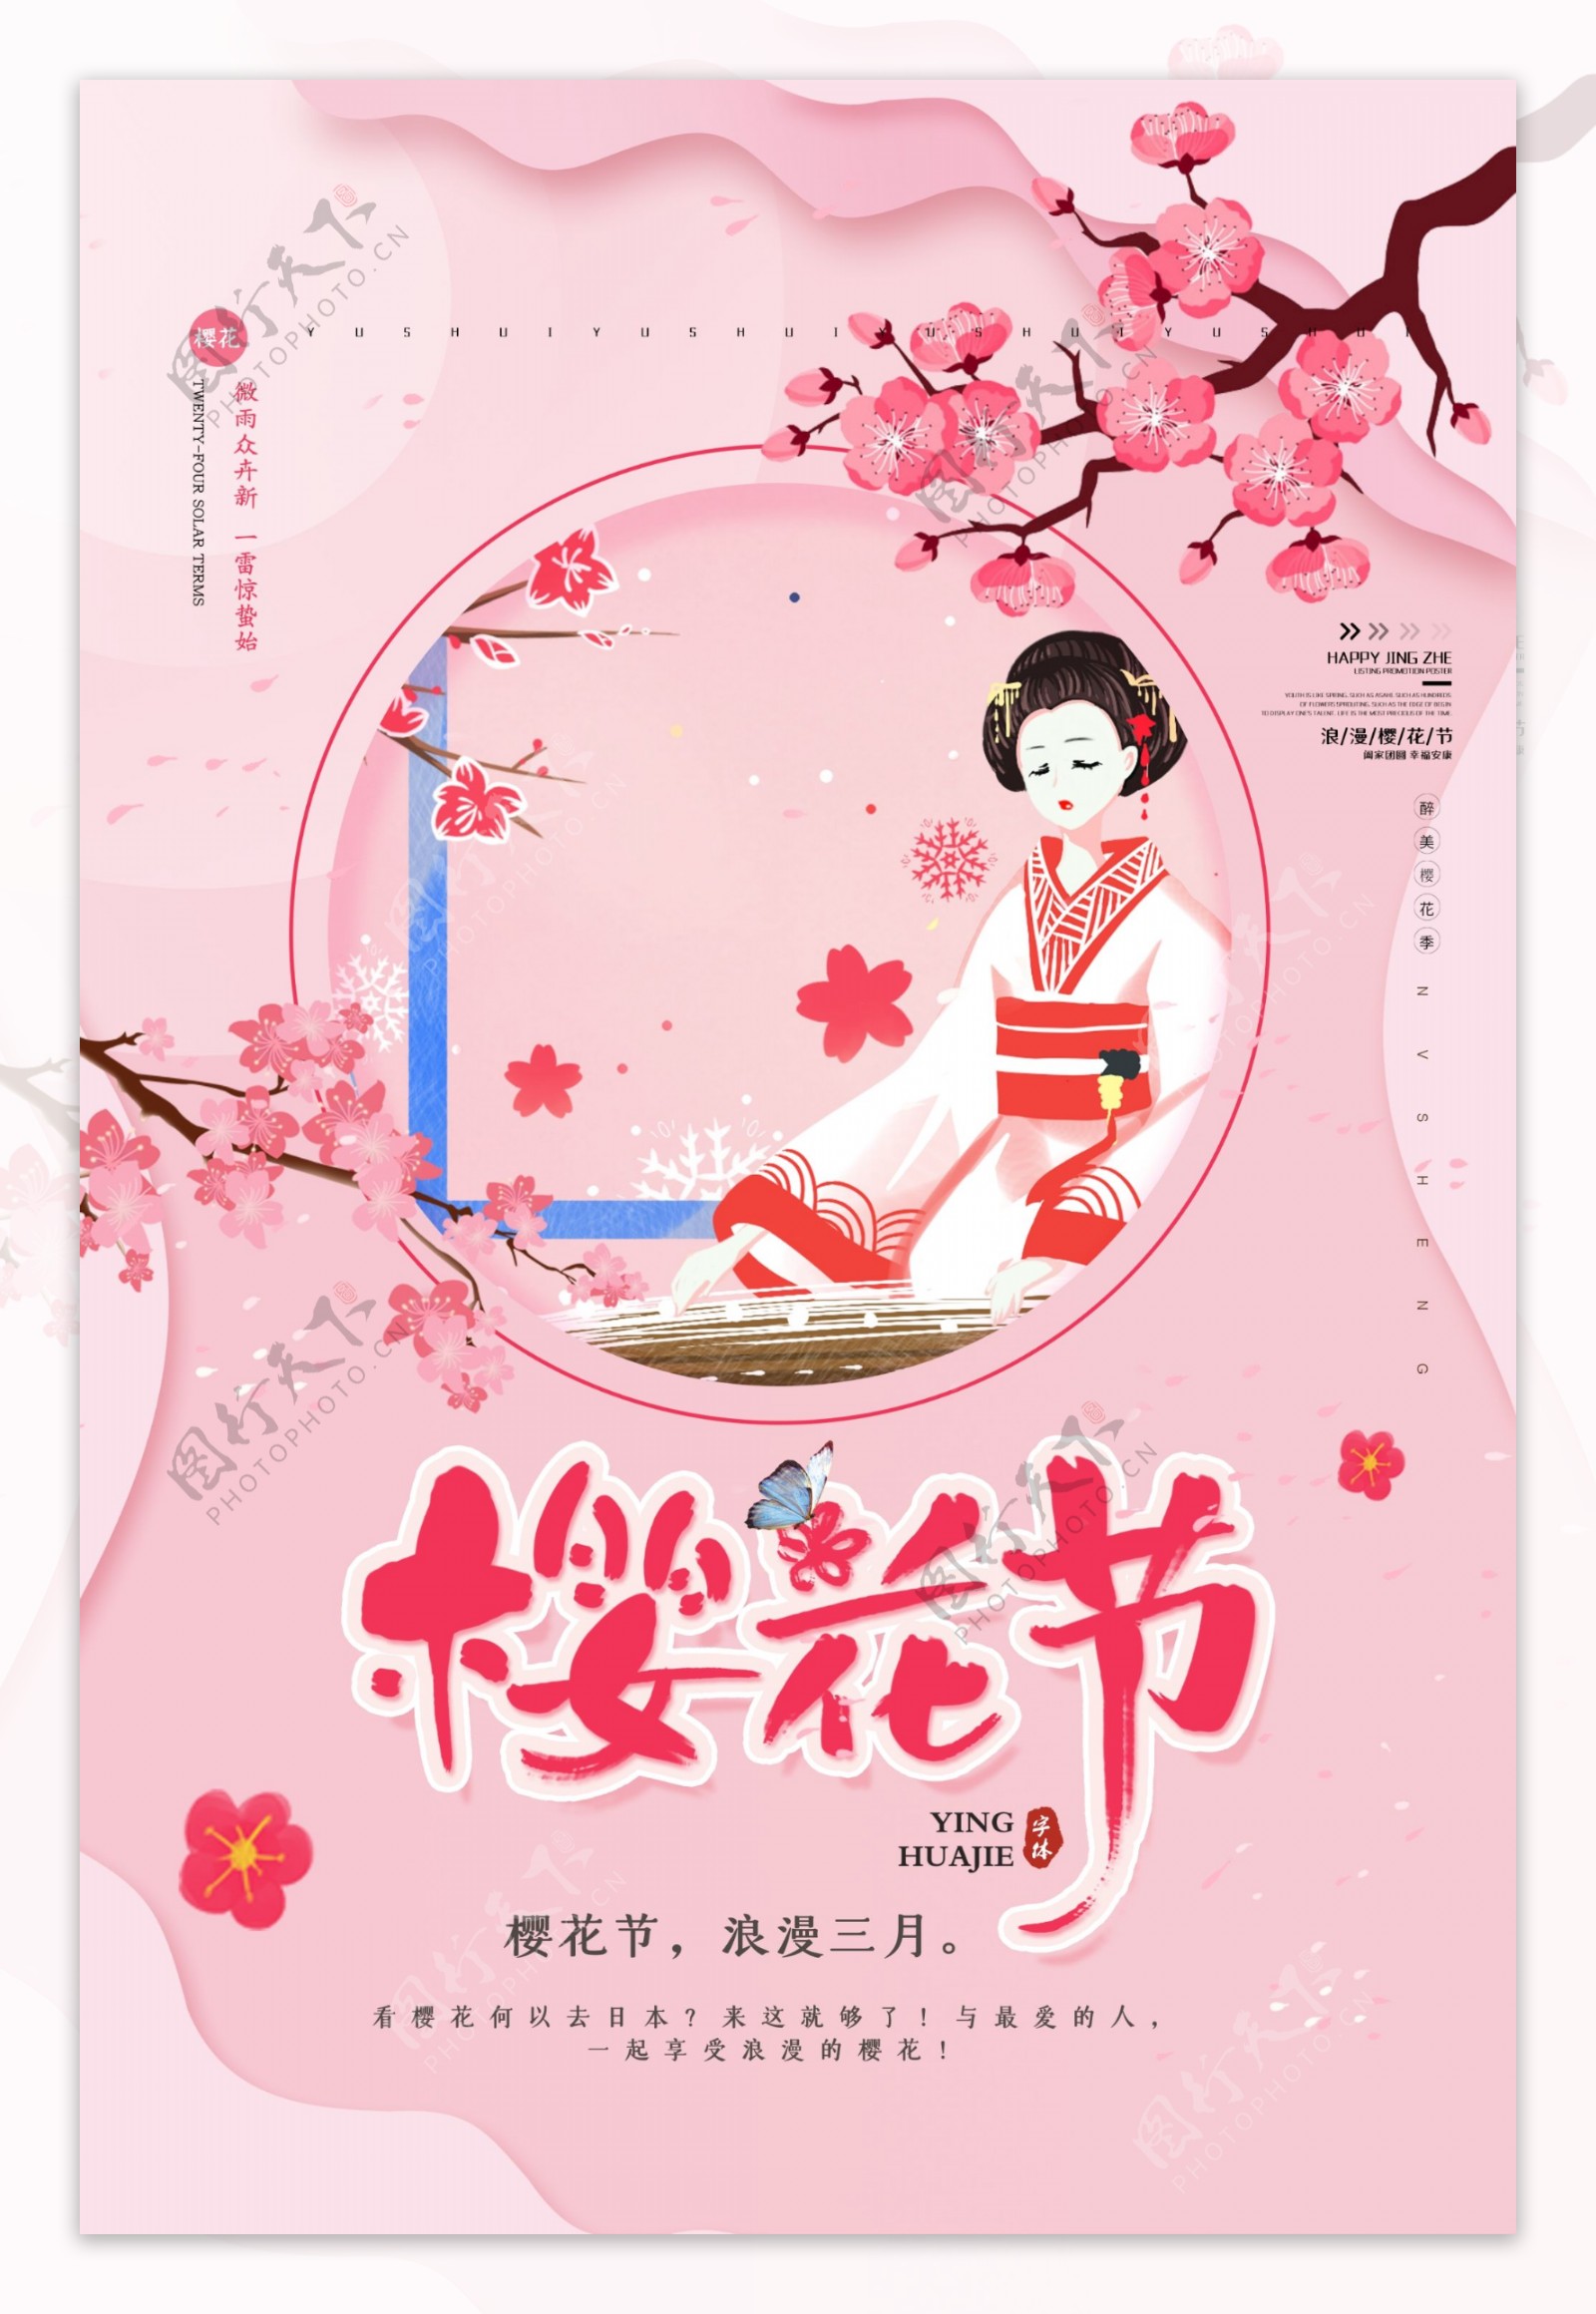 小清新樱花节旅游宣传海报